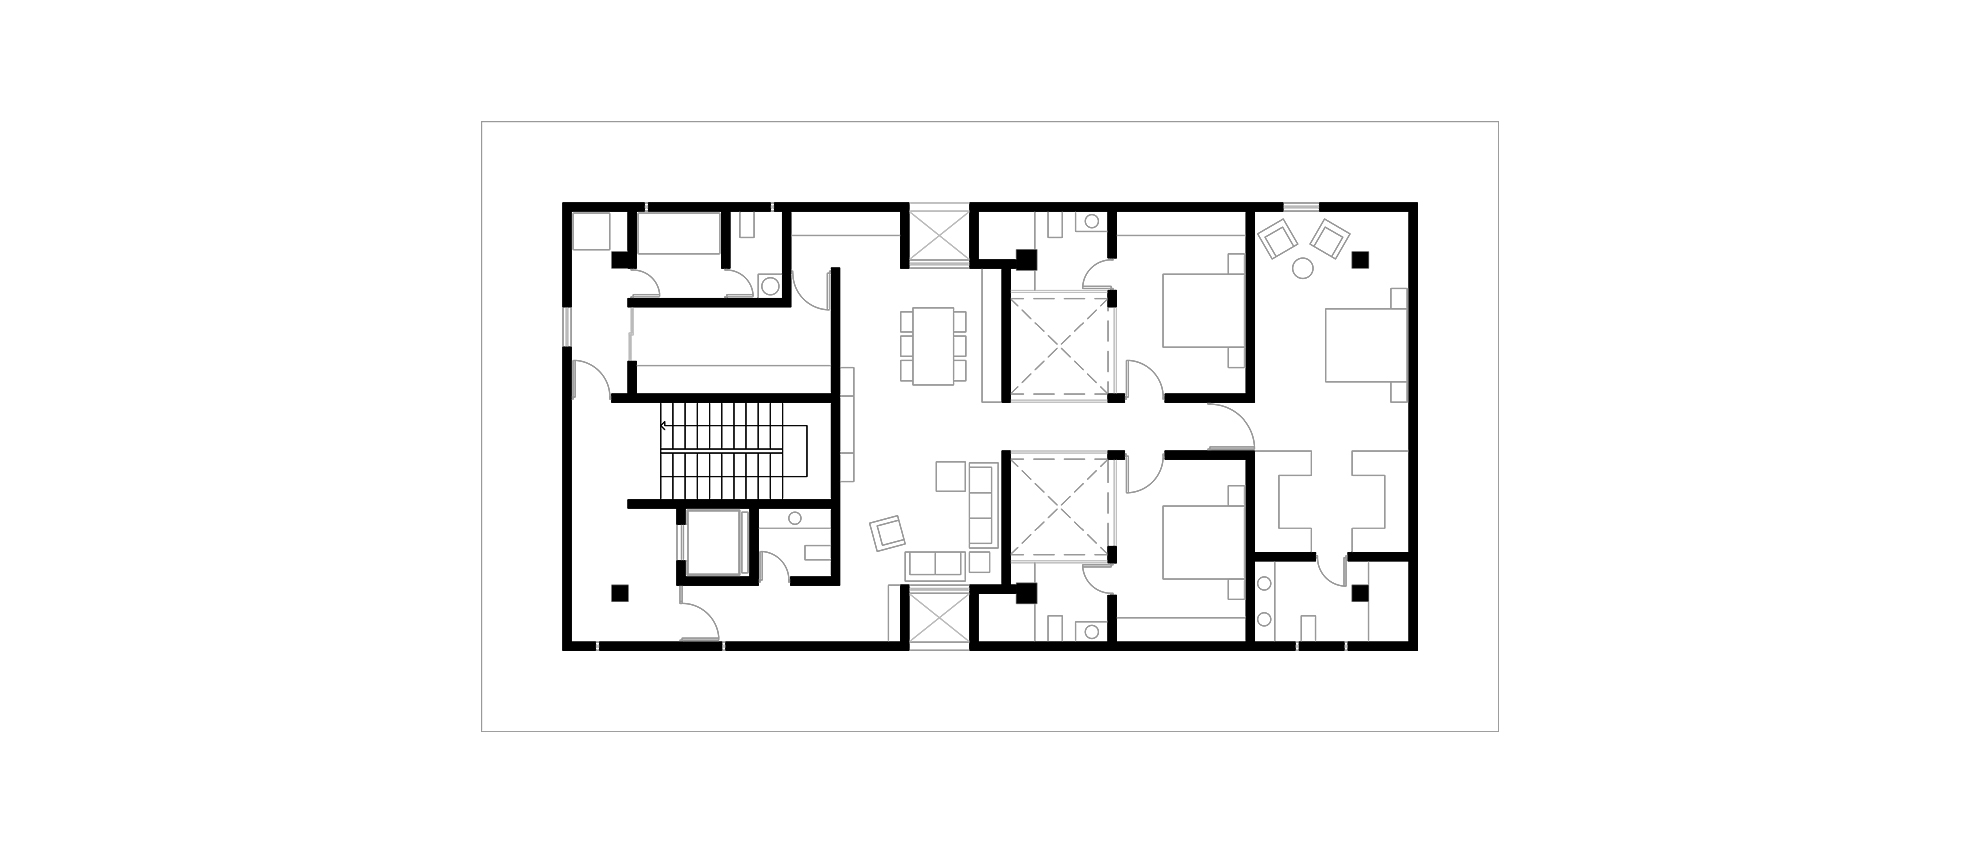 1Second Floor Plan